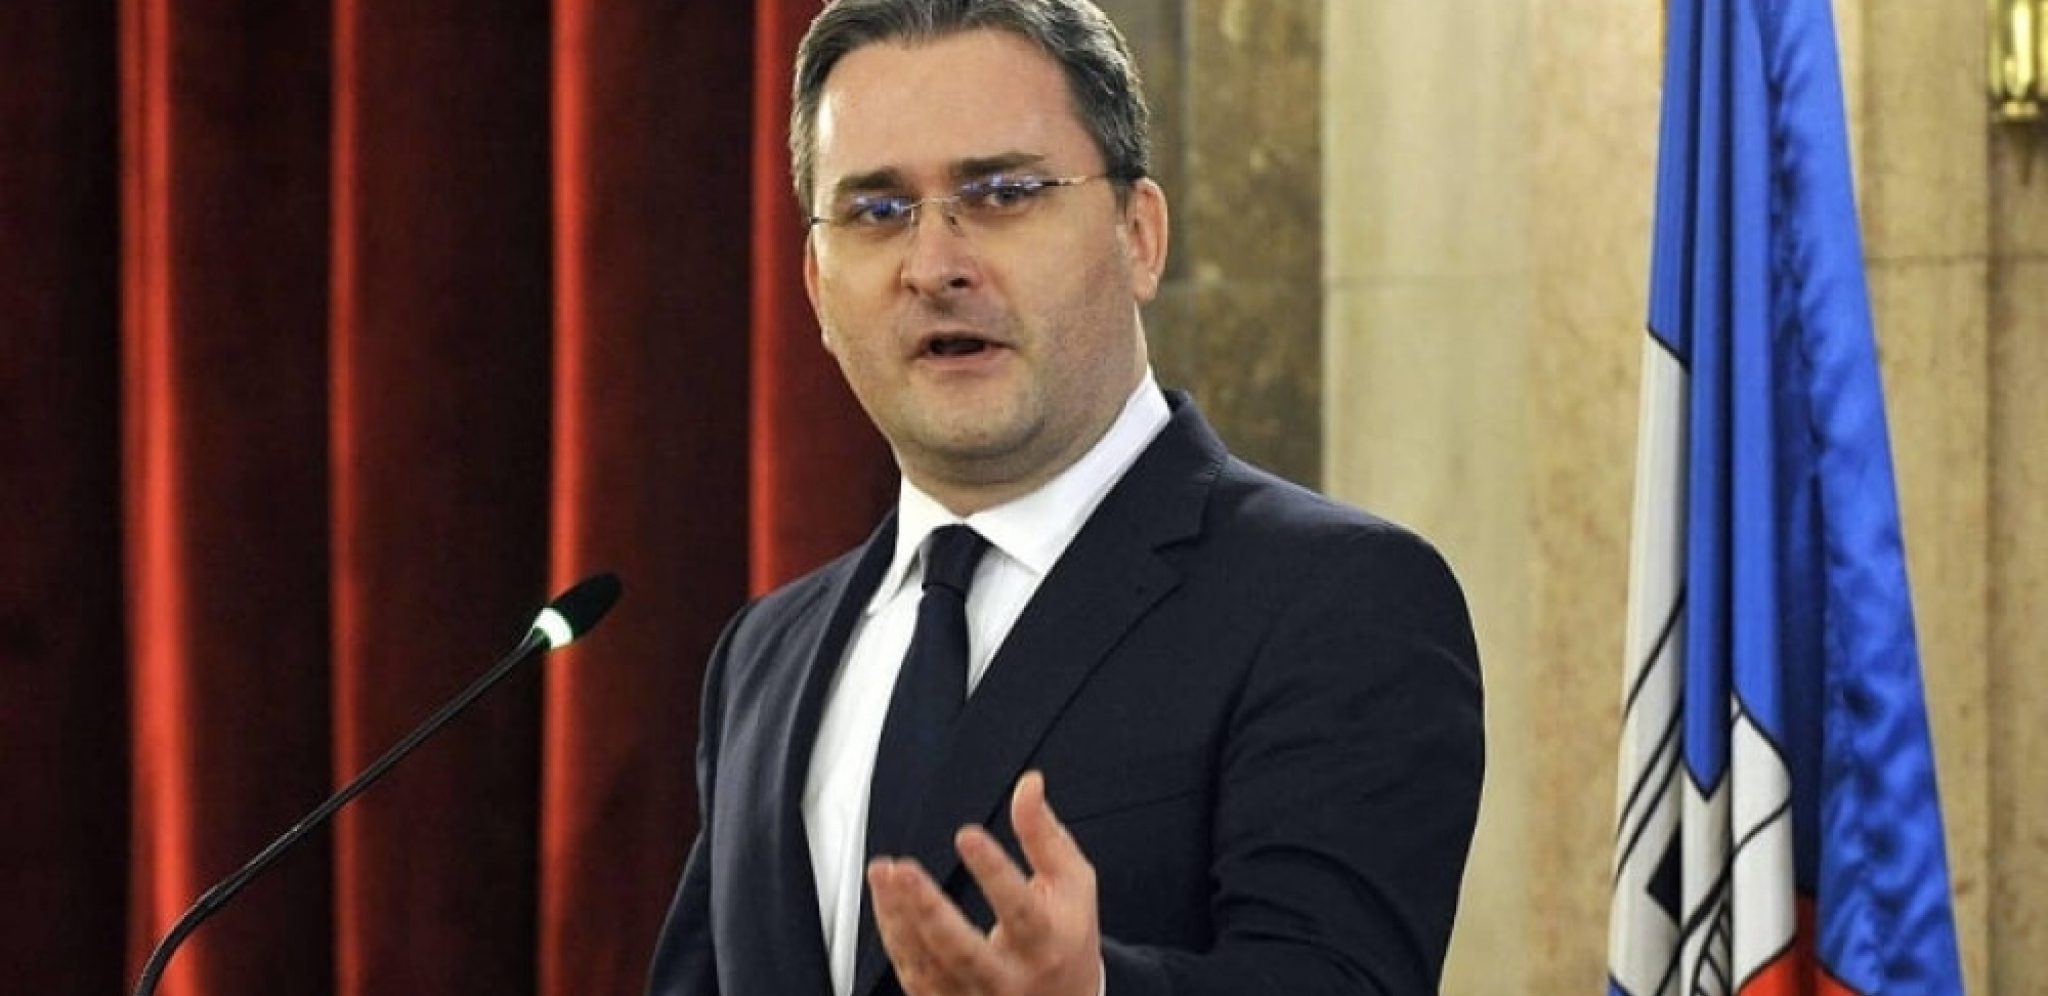 DIPLOMATSKI SKANDAL Ministar Selaković opozvao ambasadora Srbije u Poljskoj, dao nalog da hitno bude vraćen u zemlju